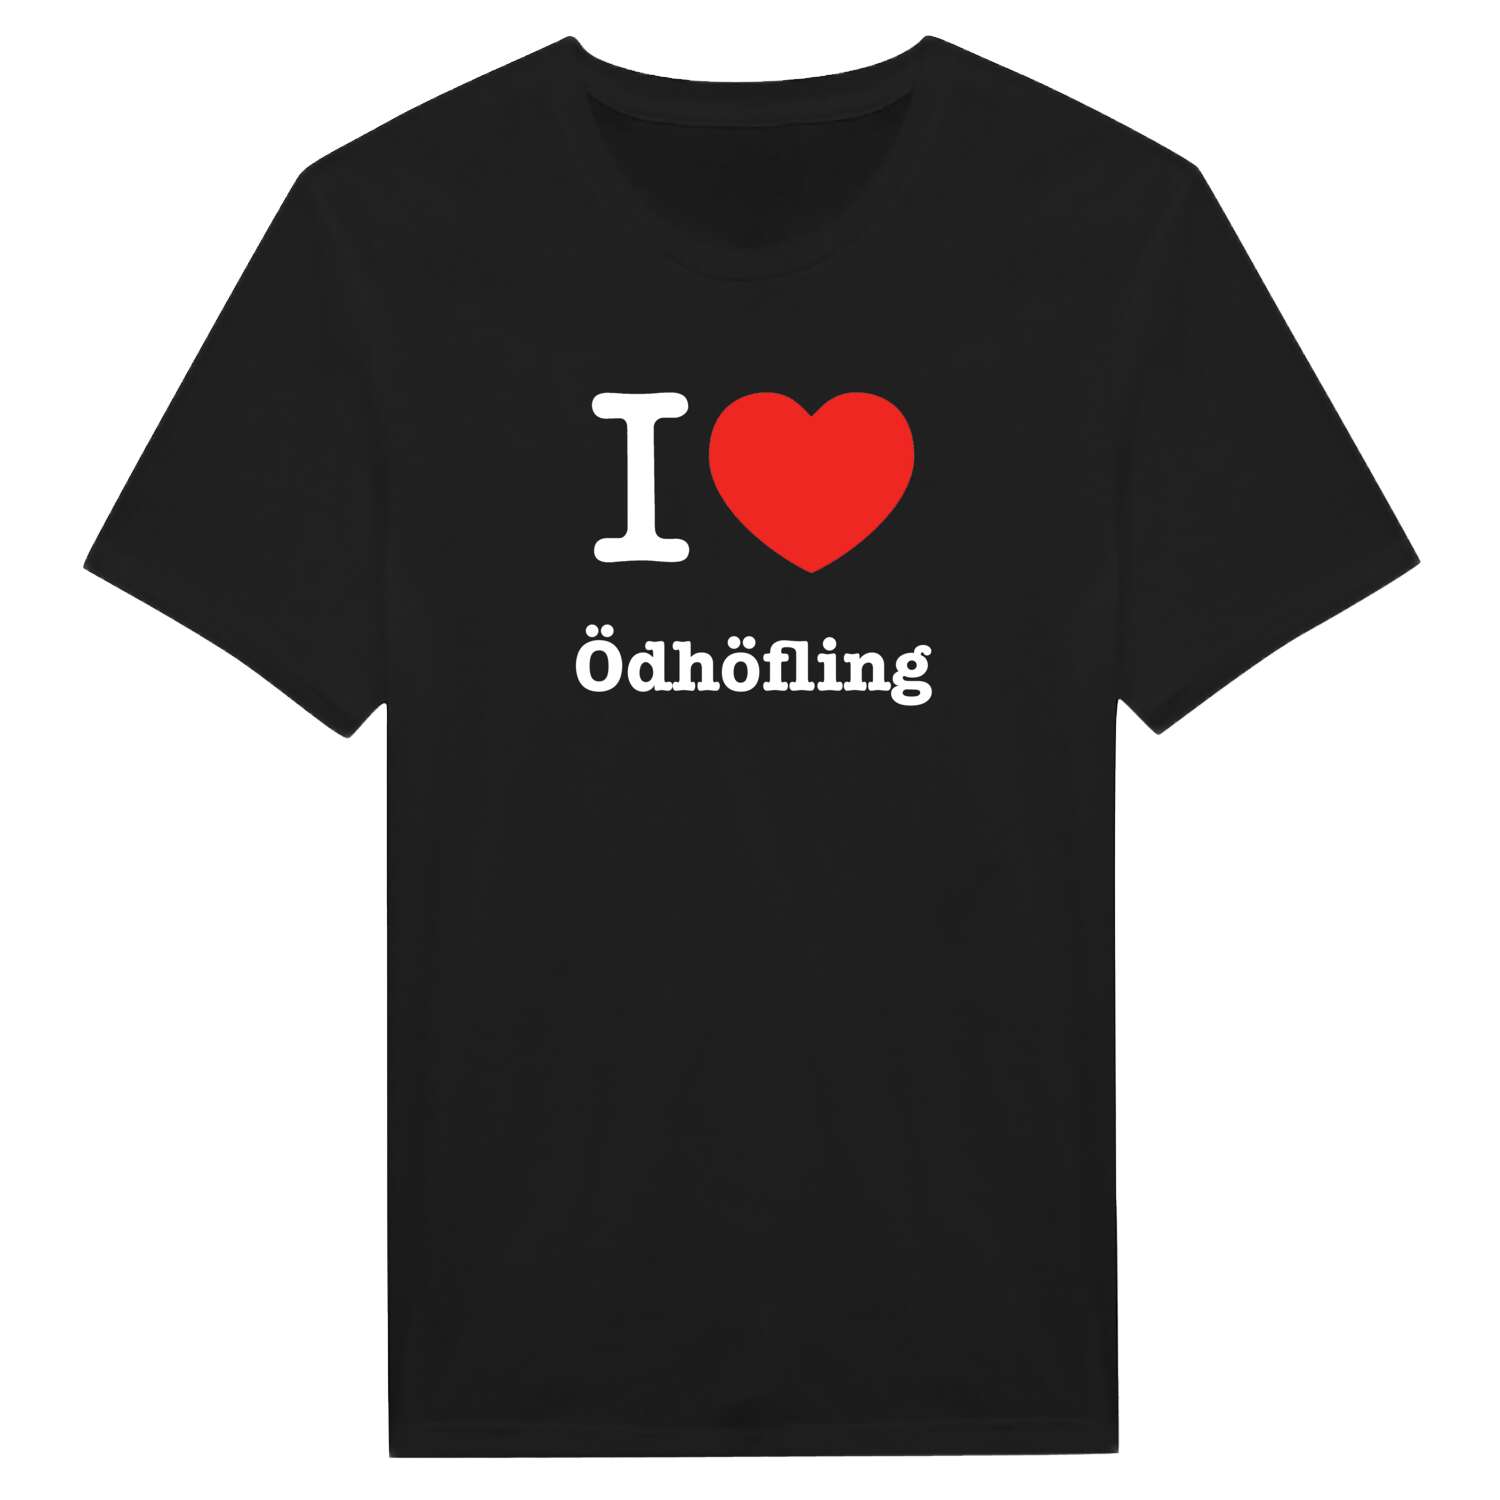 Ödhöfling T-Shirt »I love«